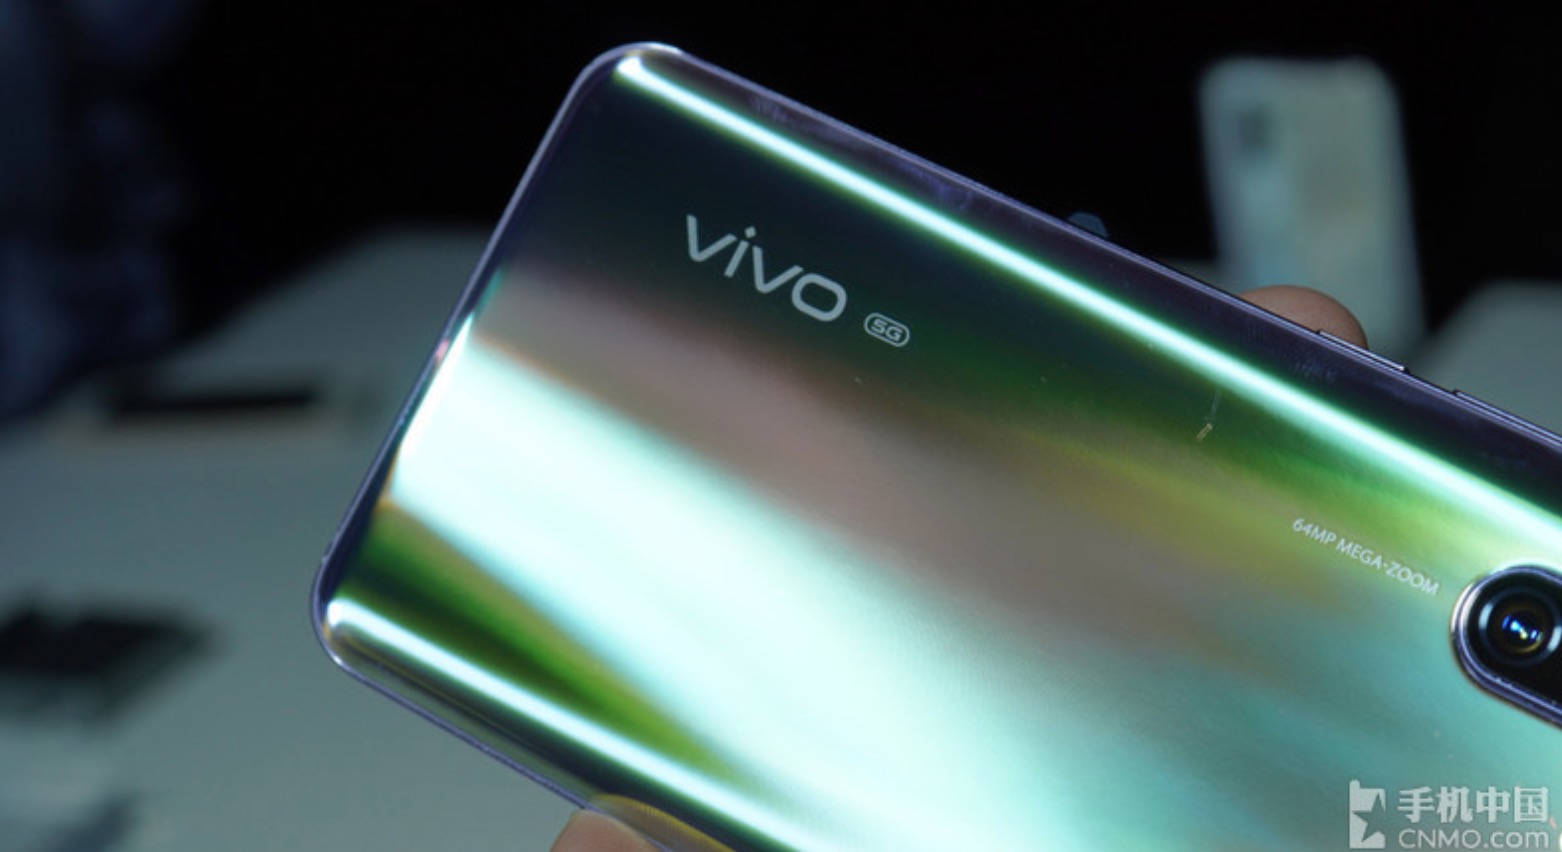 Vivo chính thức ra mắt bộ đôi X30 và X30 Pro Với
chip Exynos 980 của Samsung, camera siêu zoom 60x và hỗ trợ
5G LTE